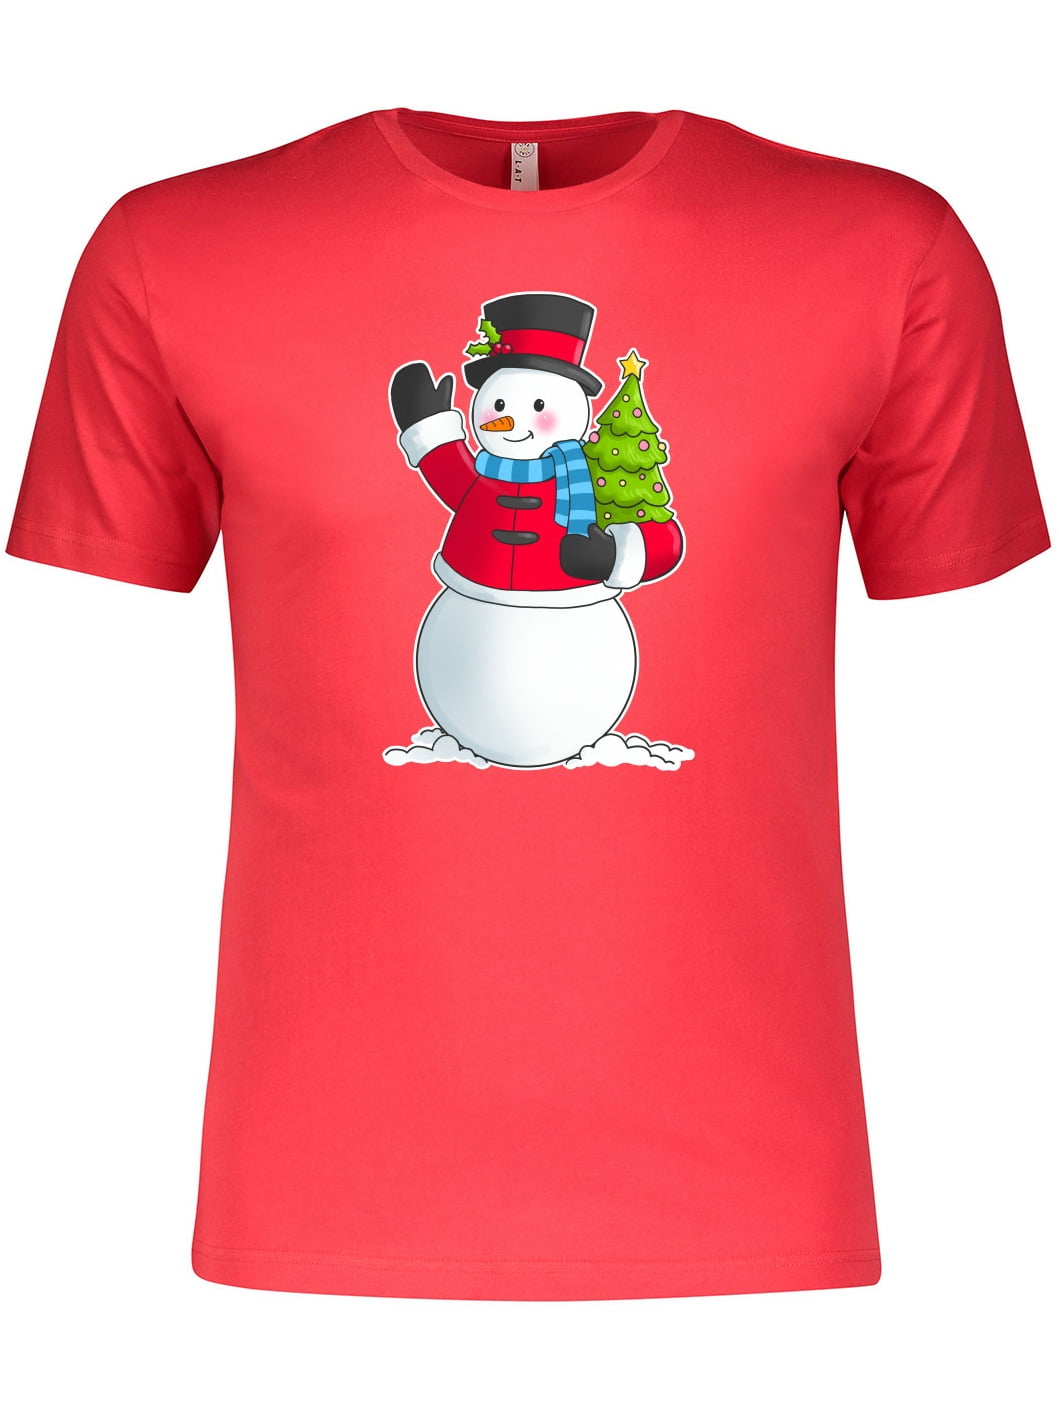 Merry Christmas Snow Ball Shirt Christmas Shirt Shirt with Saying Joy and Cheer Shirt Tee Shirt Graphic tee